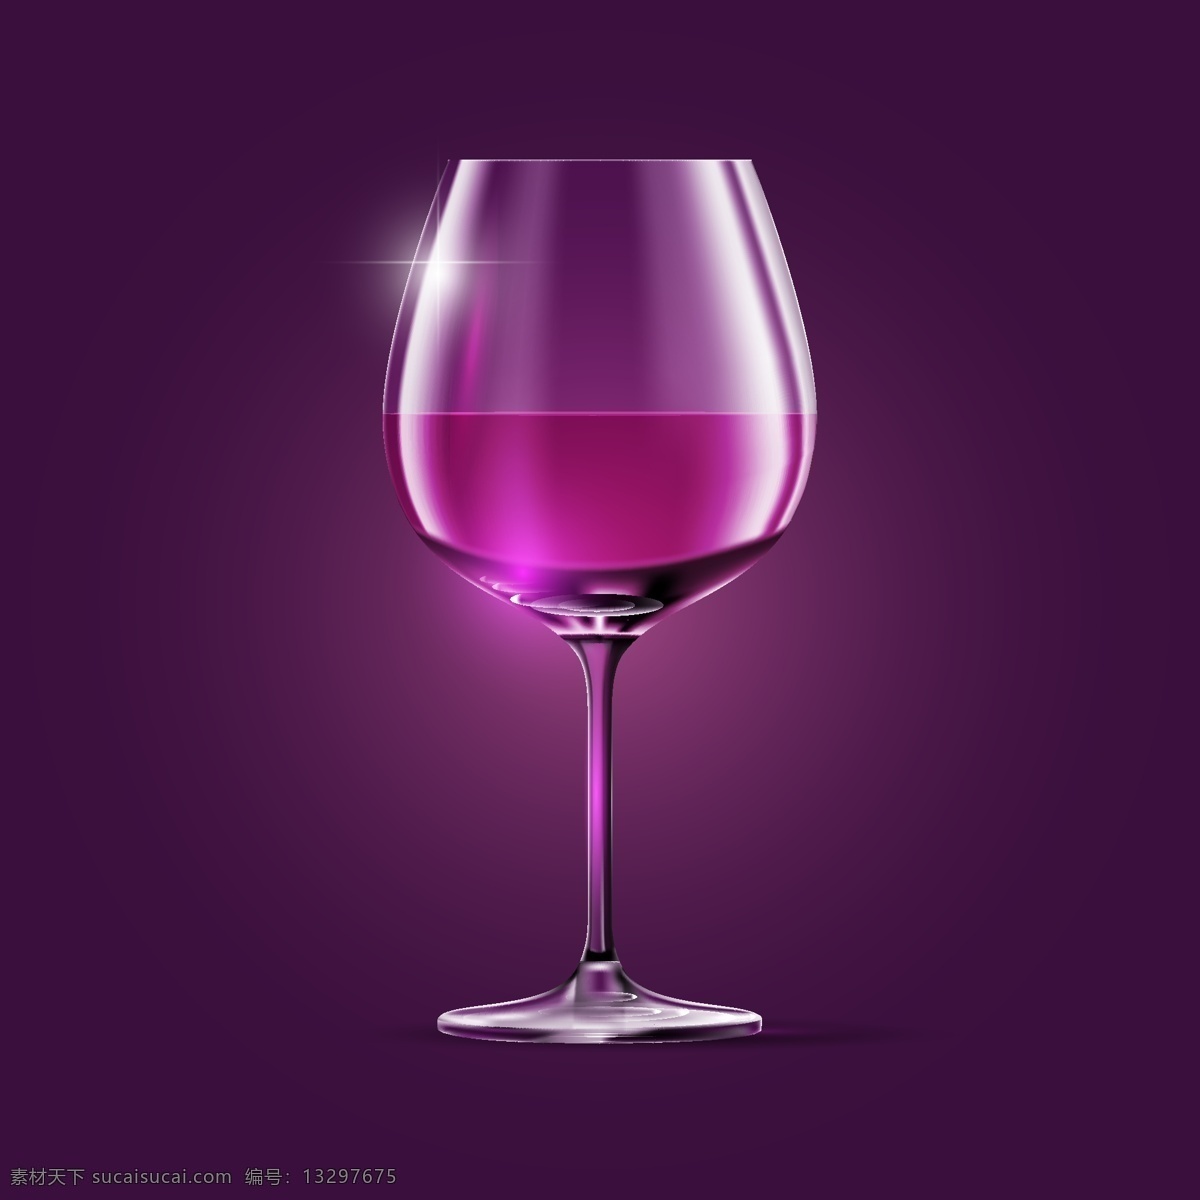 紫色红酒背景 紫色红酒 背景 紫色 红酒背景 紫色背景 红酒杯 共享设计矢量 生活百科 生活用品